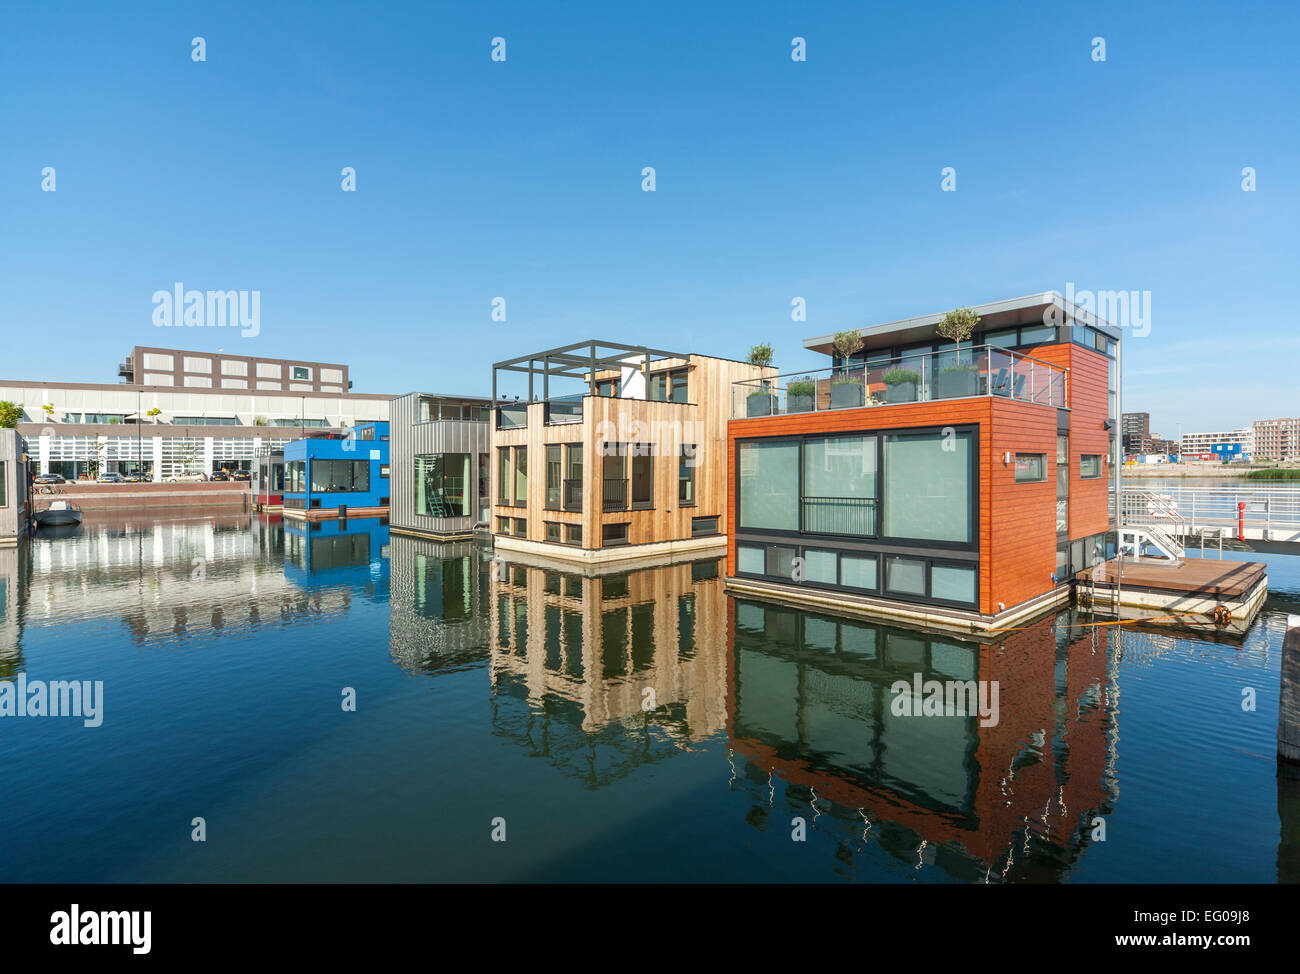 Le case galleggianti case moderne case galleggianti barche casa ville sull'acqua in Amsterdam IJburg Yburg distretto. Innalzamento del livello del mare progetto. Foto Stock